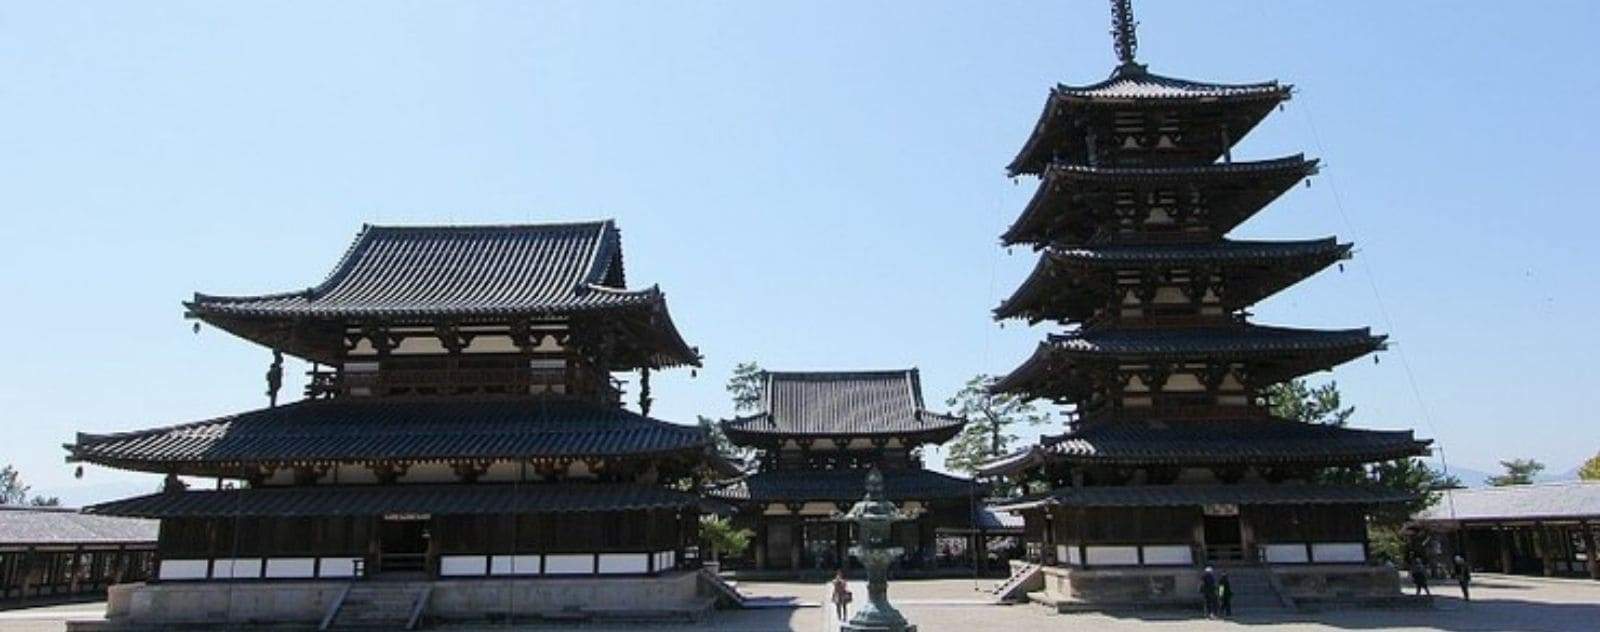 The Horyuji Temple